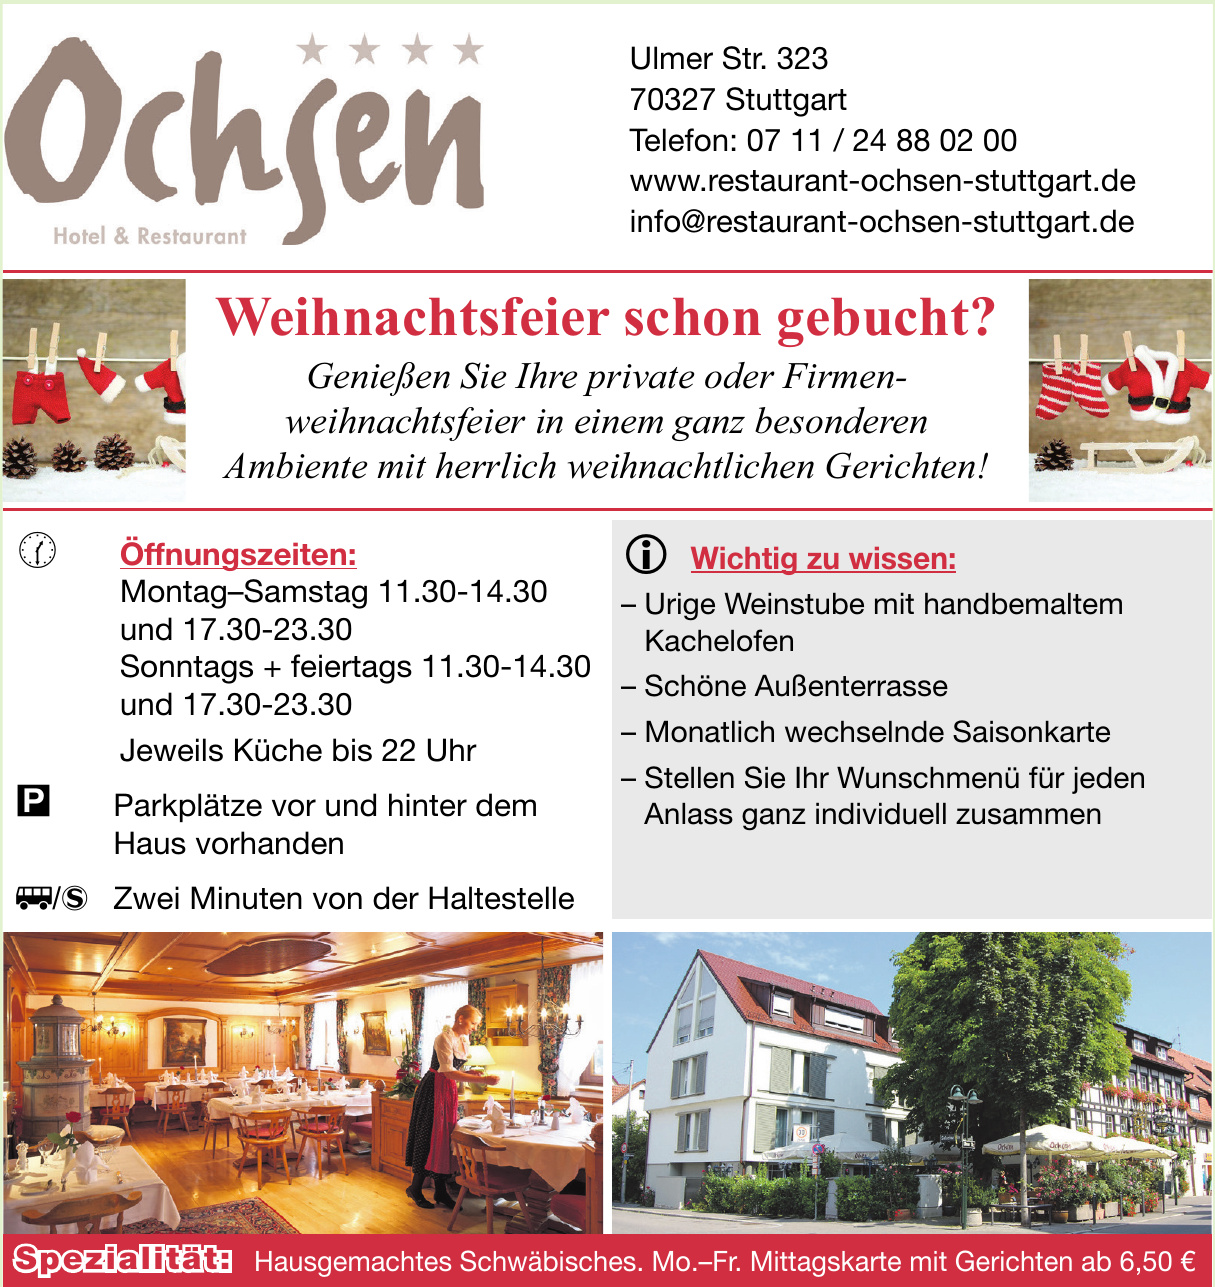 Ochsen Hotel & Restaurant